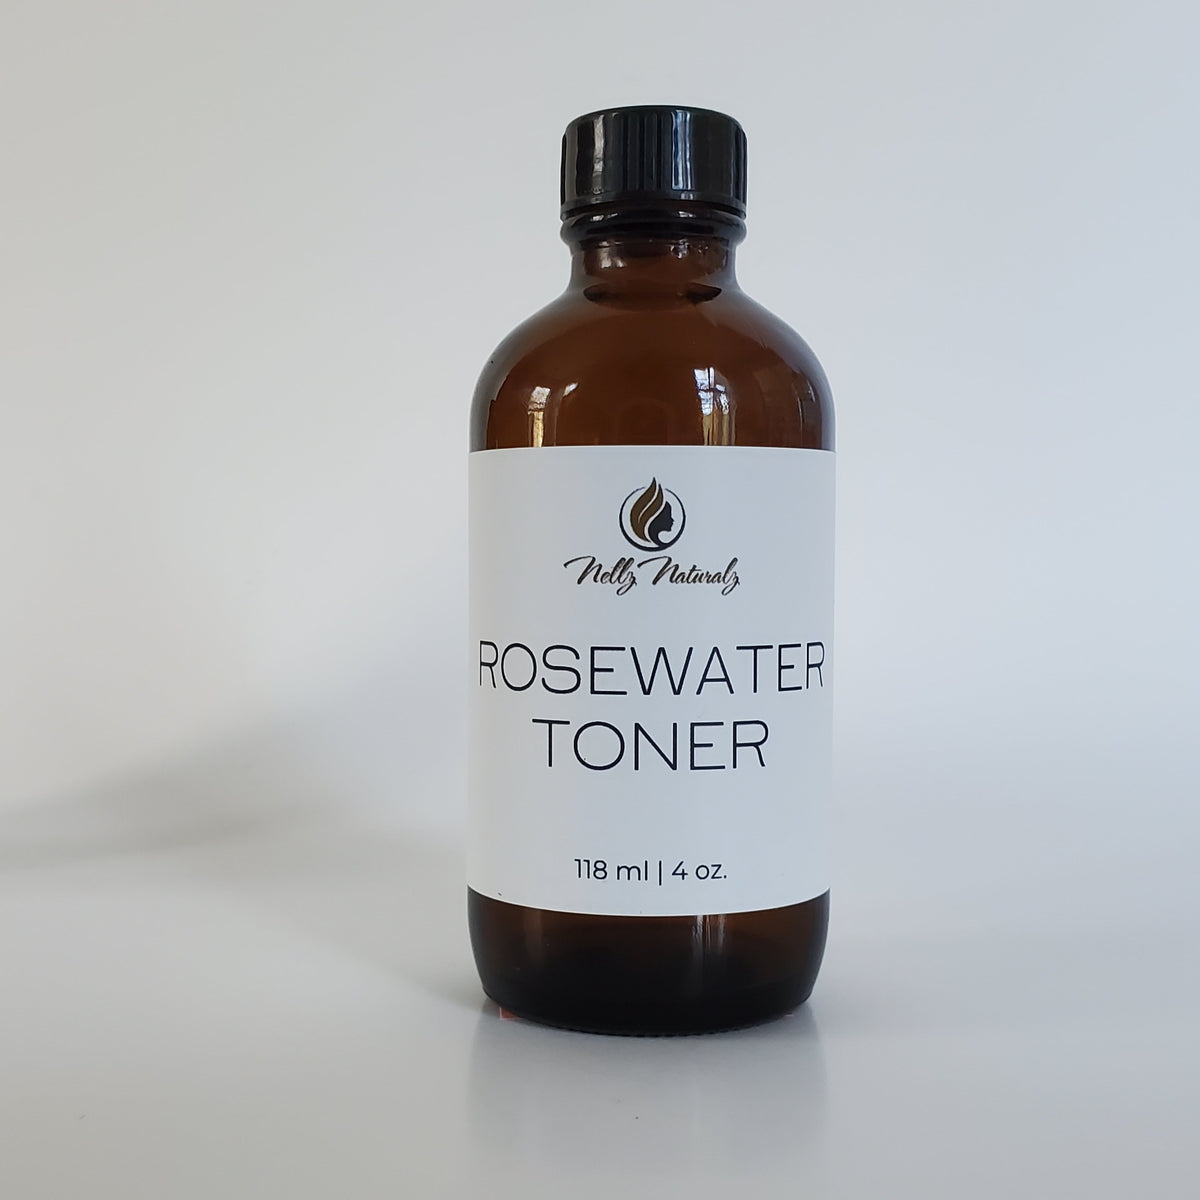 Rosewater Toner, Rose Water Toner